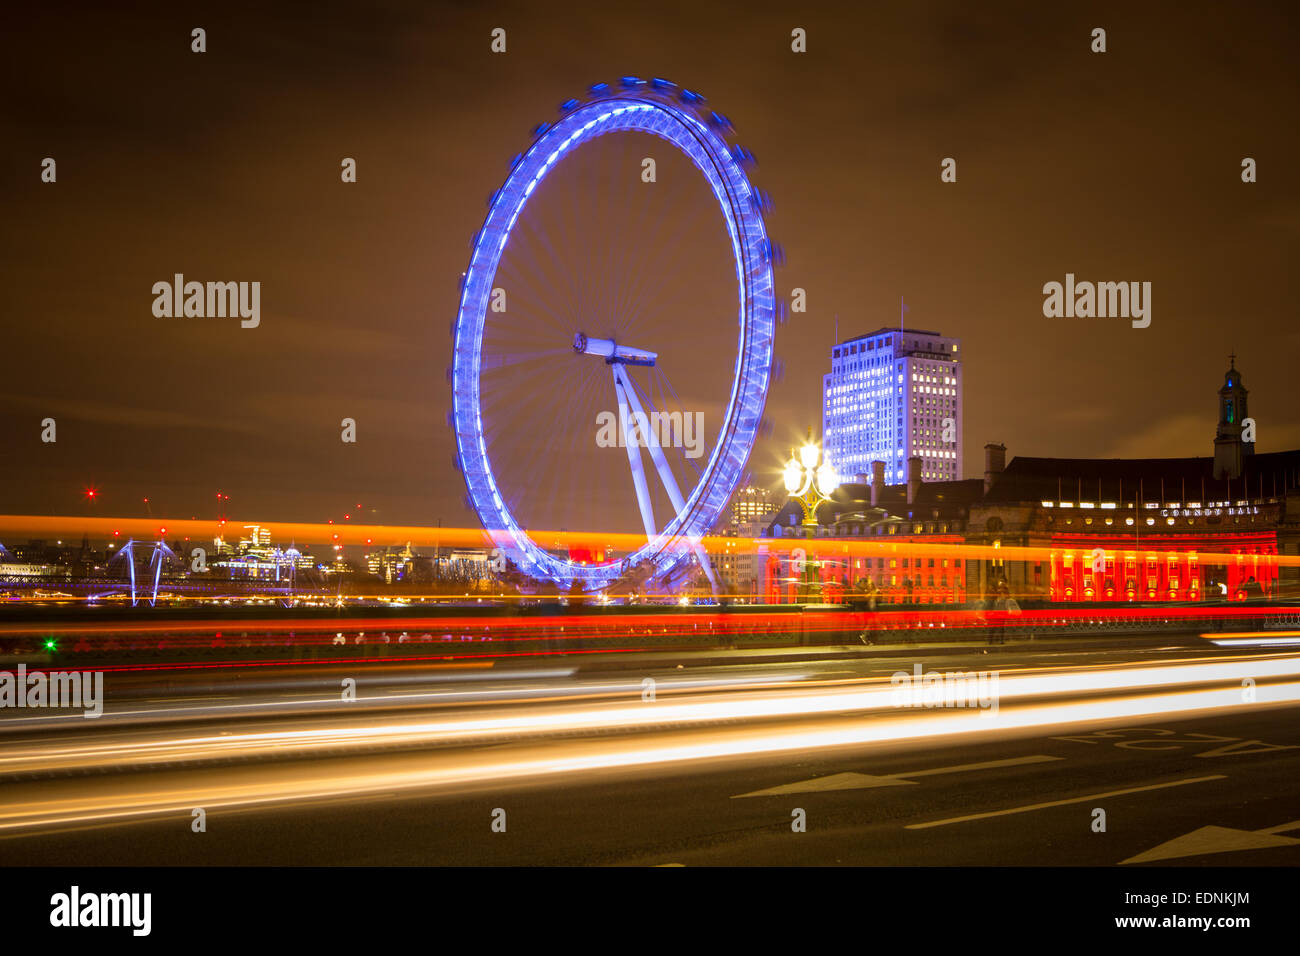 Photographie par Roy Riley 0781 roy@royriley.co.uk 6547063 Le London Eye de nuit avec réflexion et de trafic des stries. Prises fro Banque D'Images